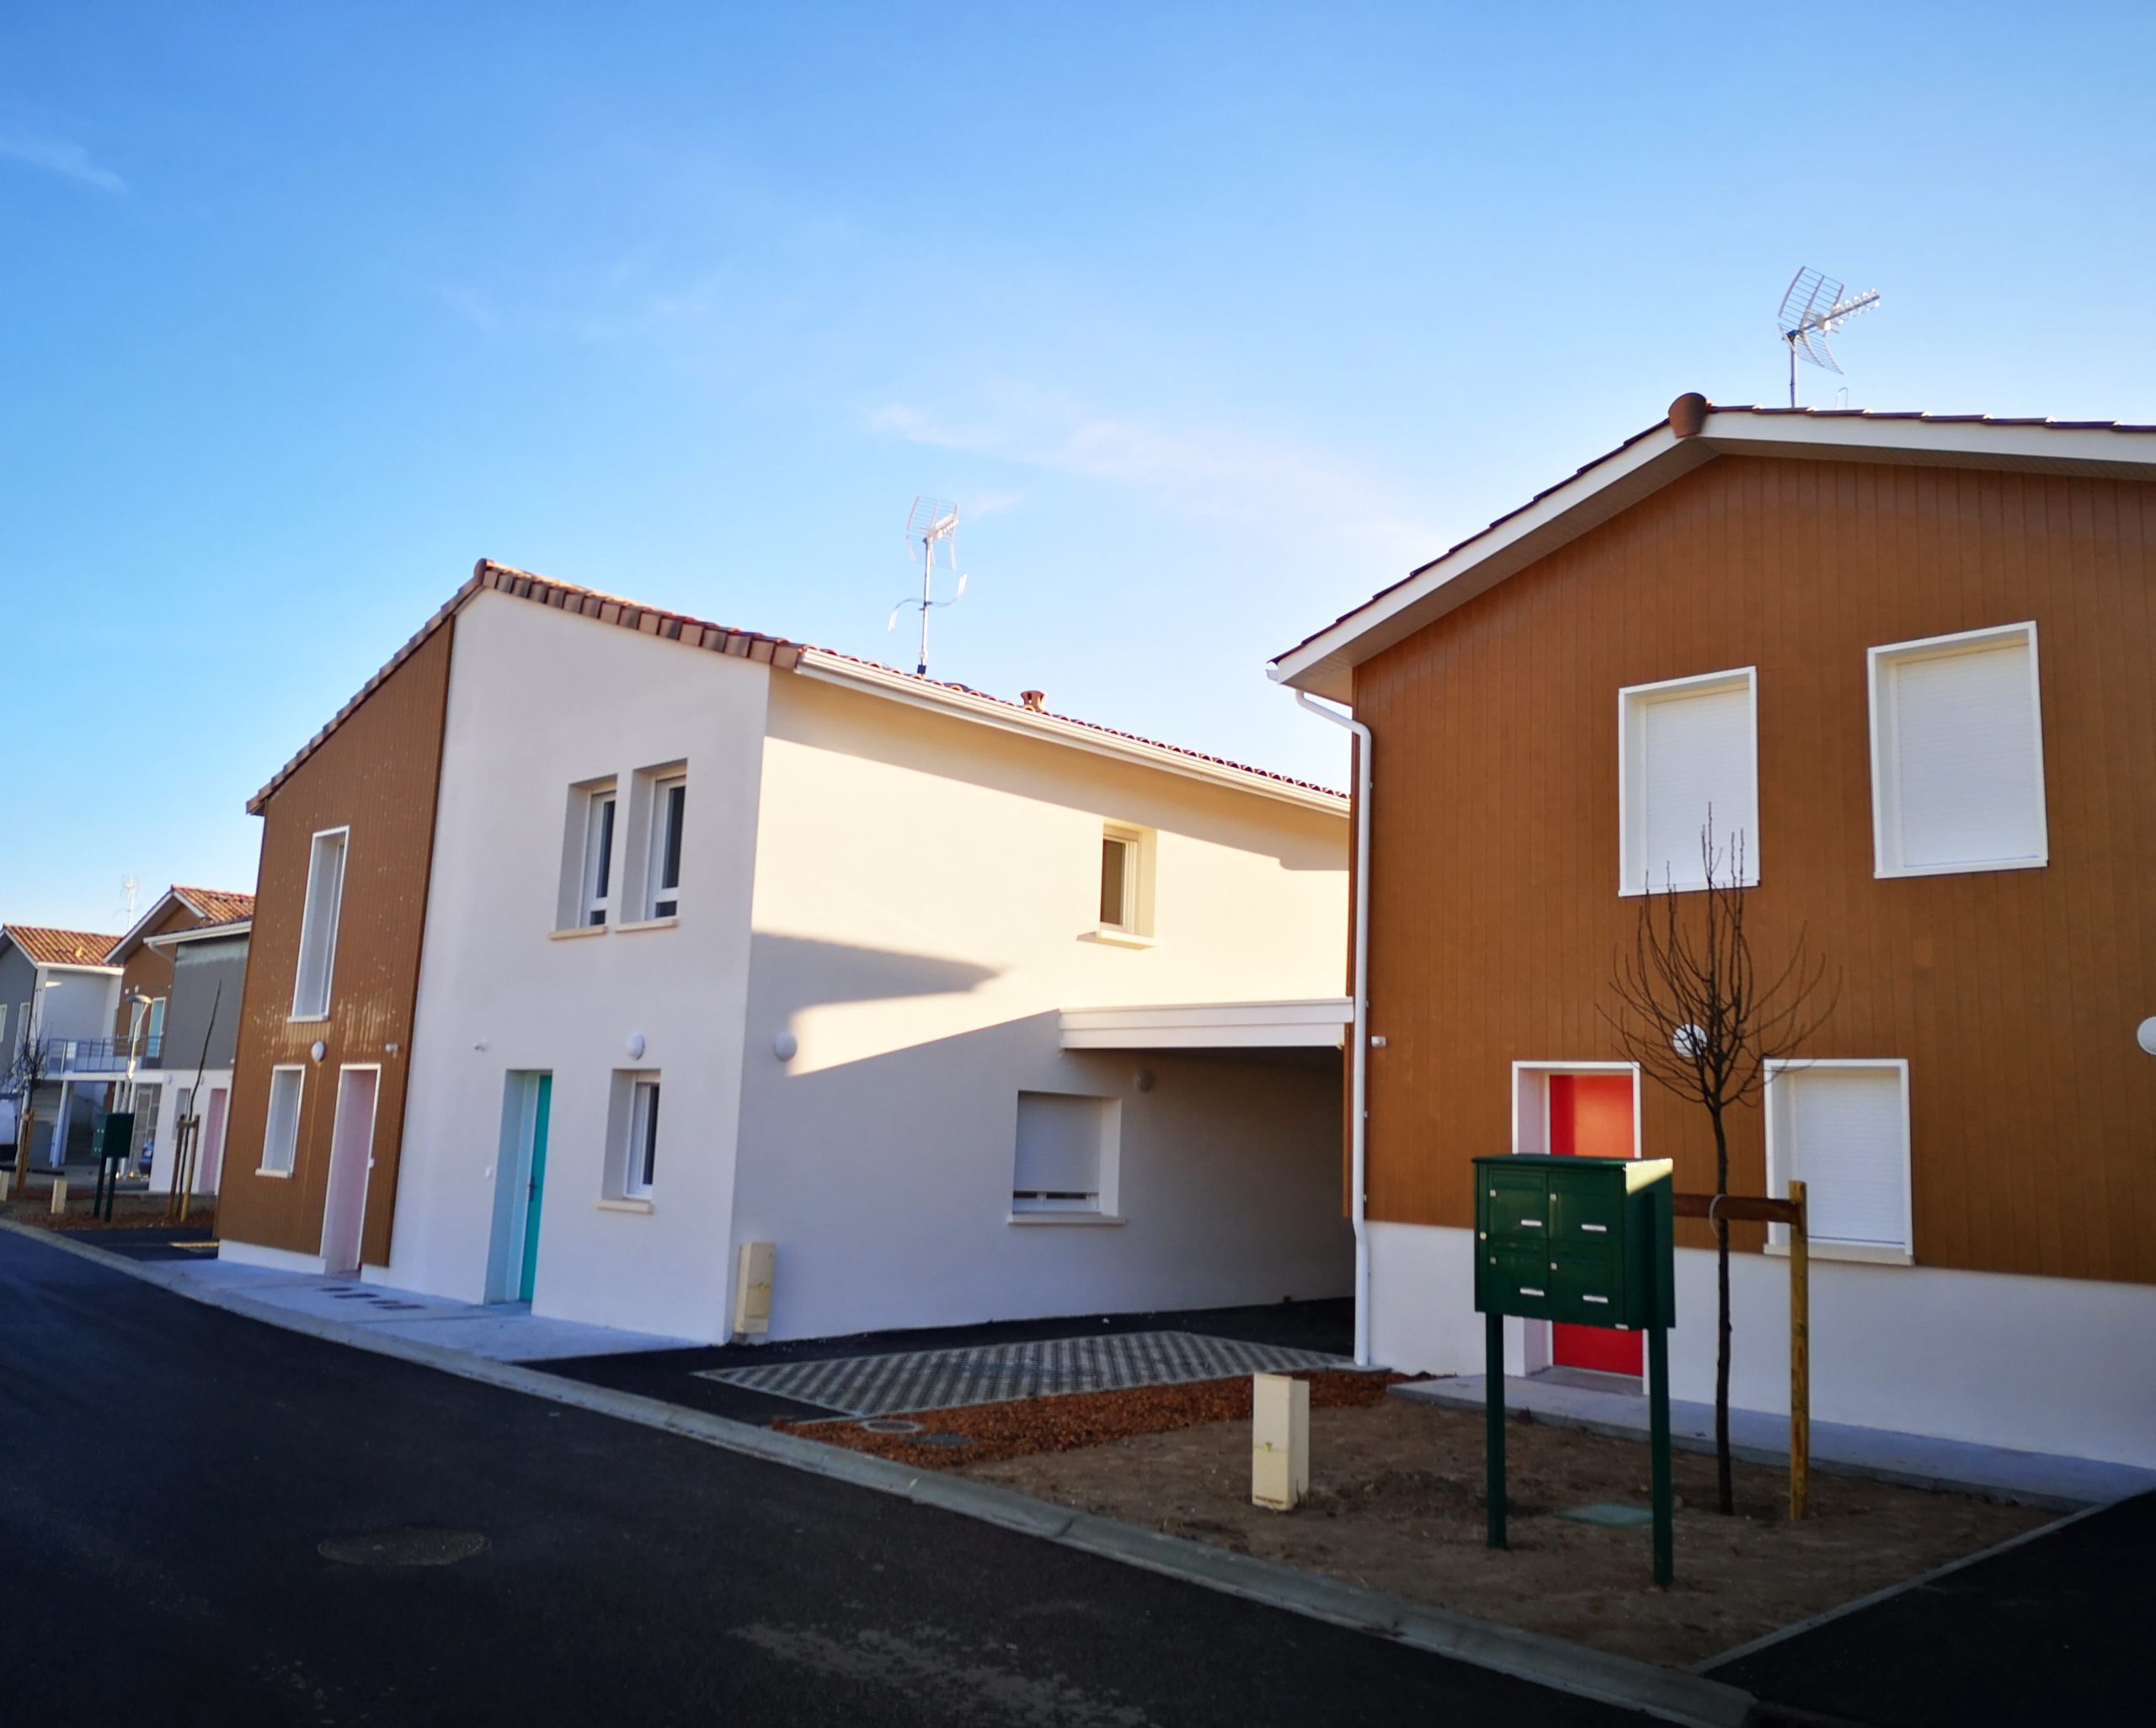 25 nouvelles maisons à Saint-Denis-de-Pile - Gironde Habitat